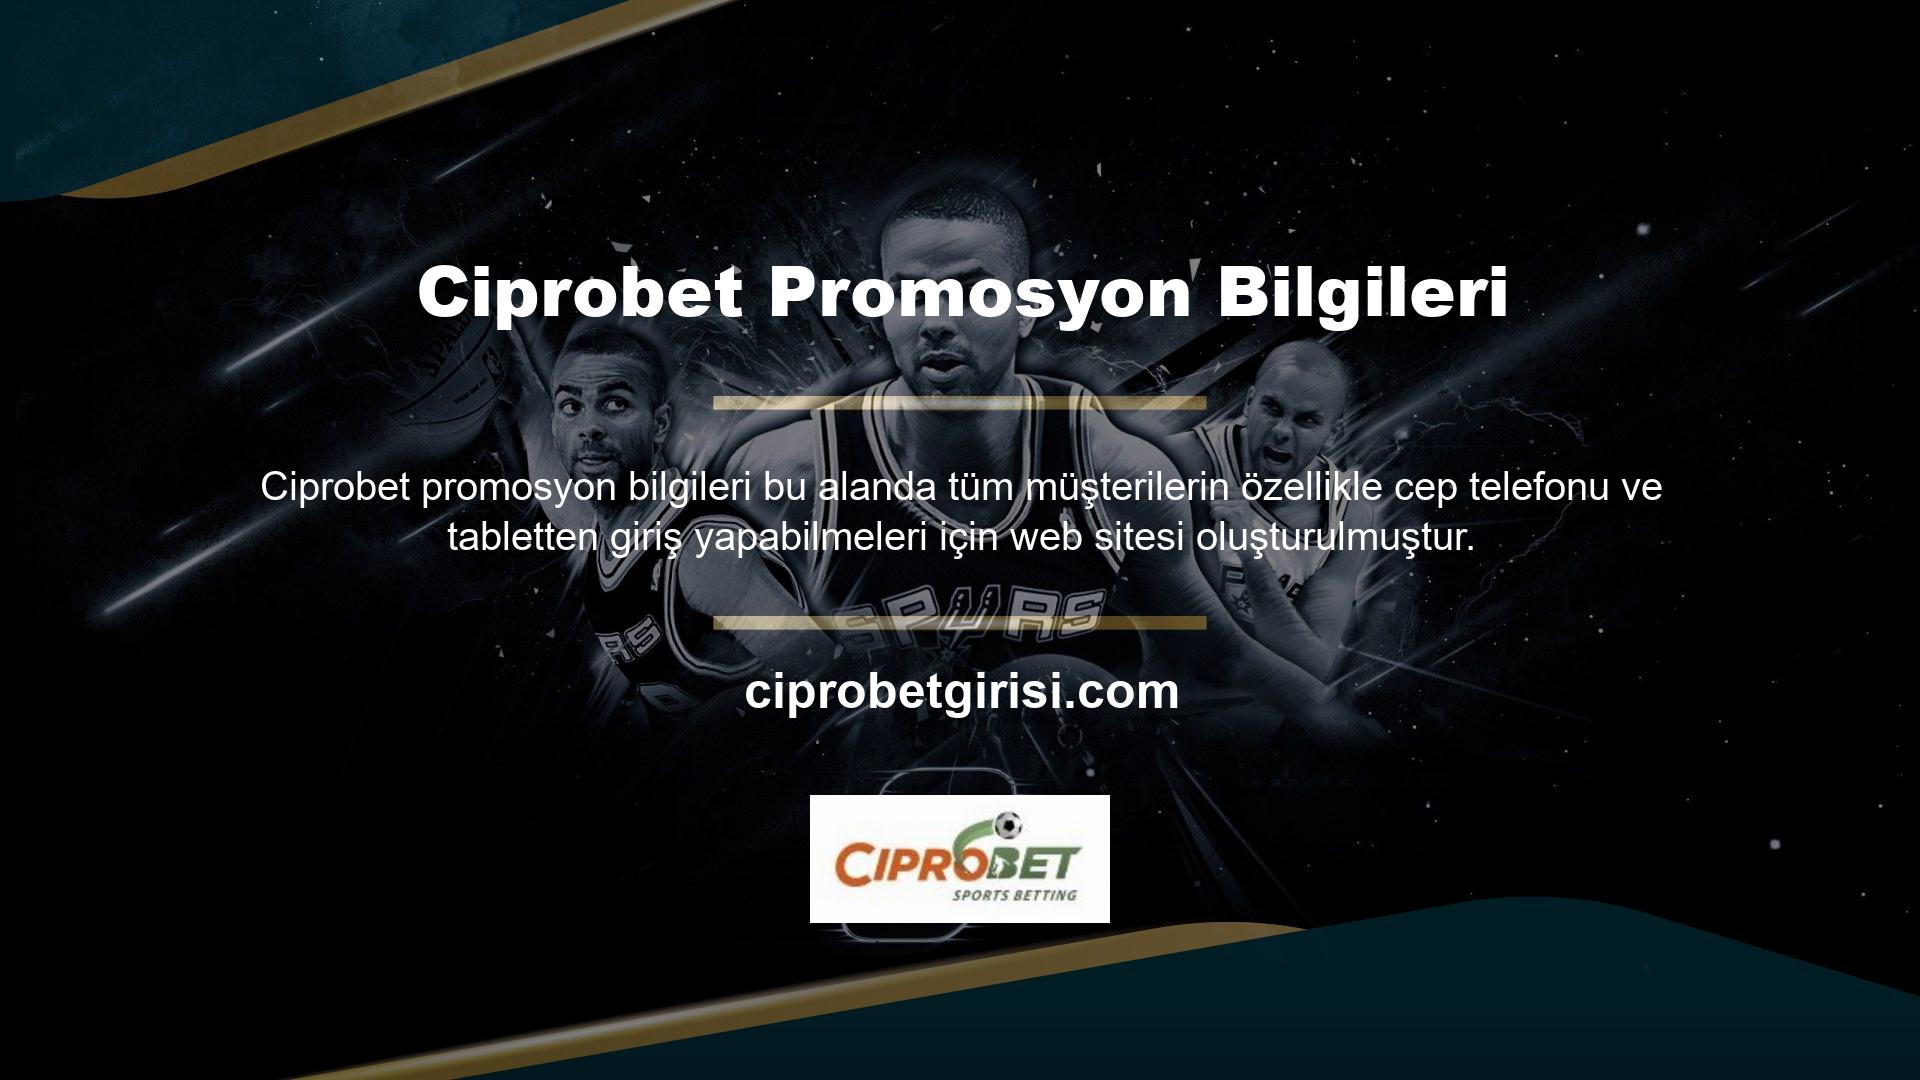 Ciprobet Promosyonları, Türkiye genelinde her türlü içerikten para kazanabileceğiniz en ucuz mobil erişim platformlarını bir arada sunmaya devam ediyor